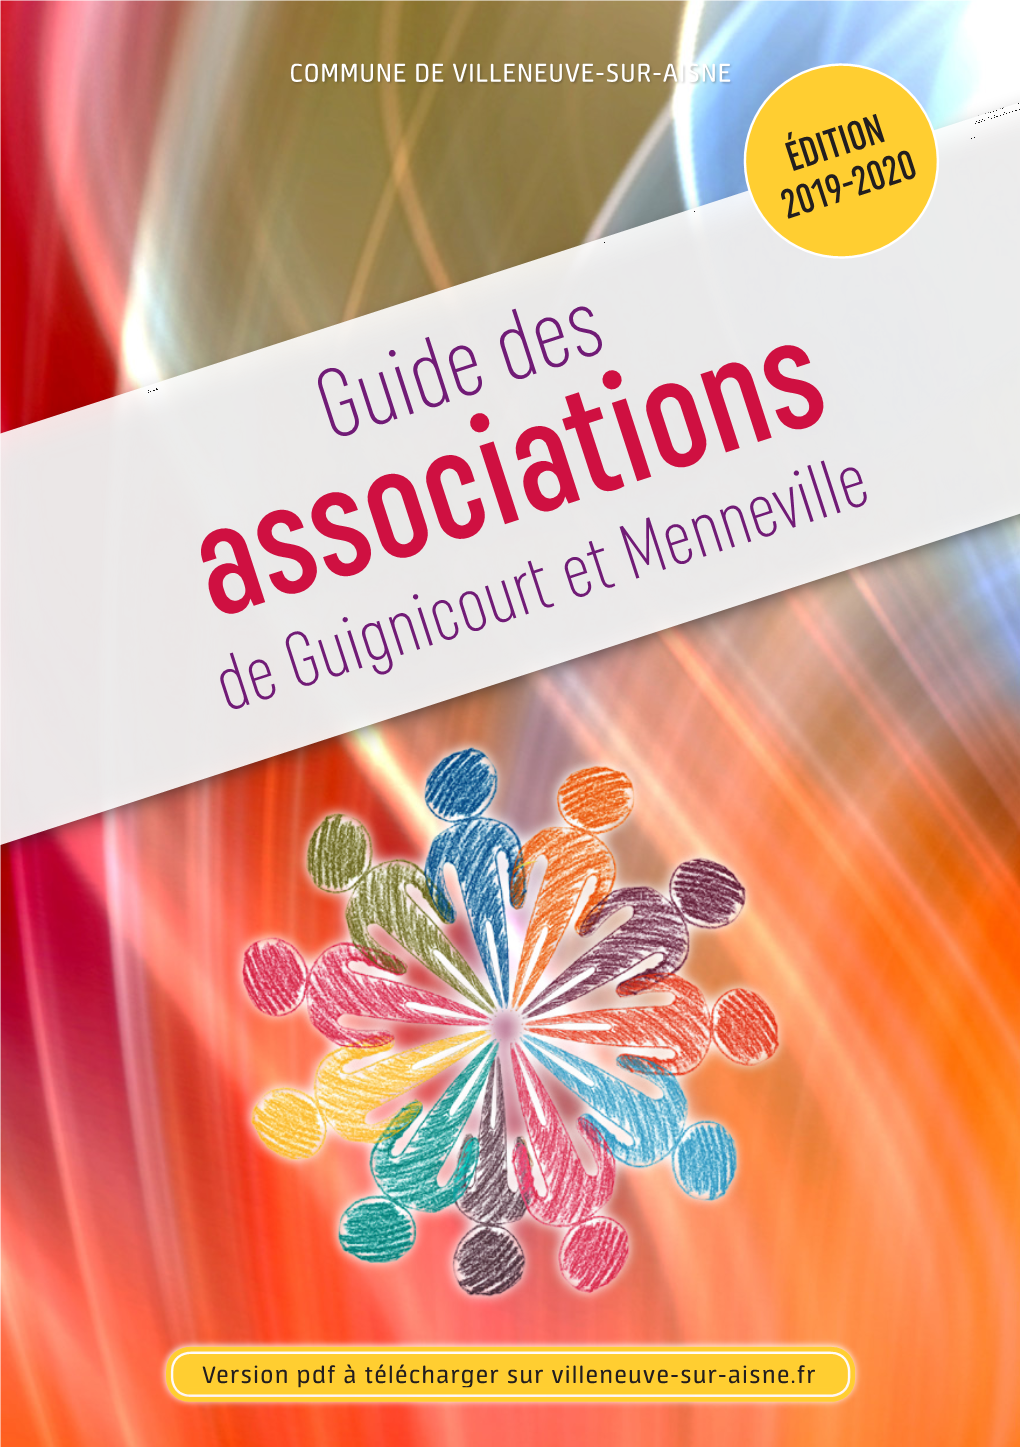 Associations De Guignicourt Et Menneville